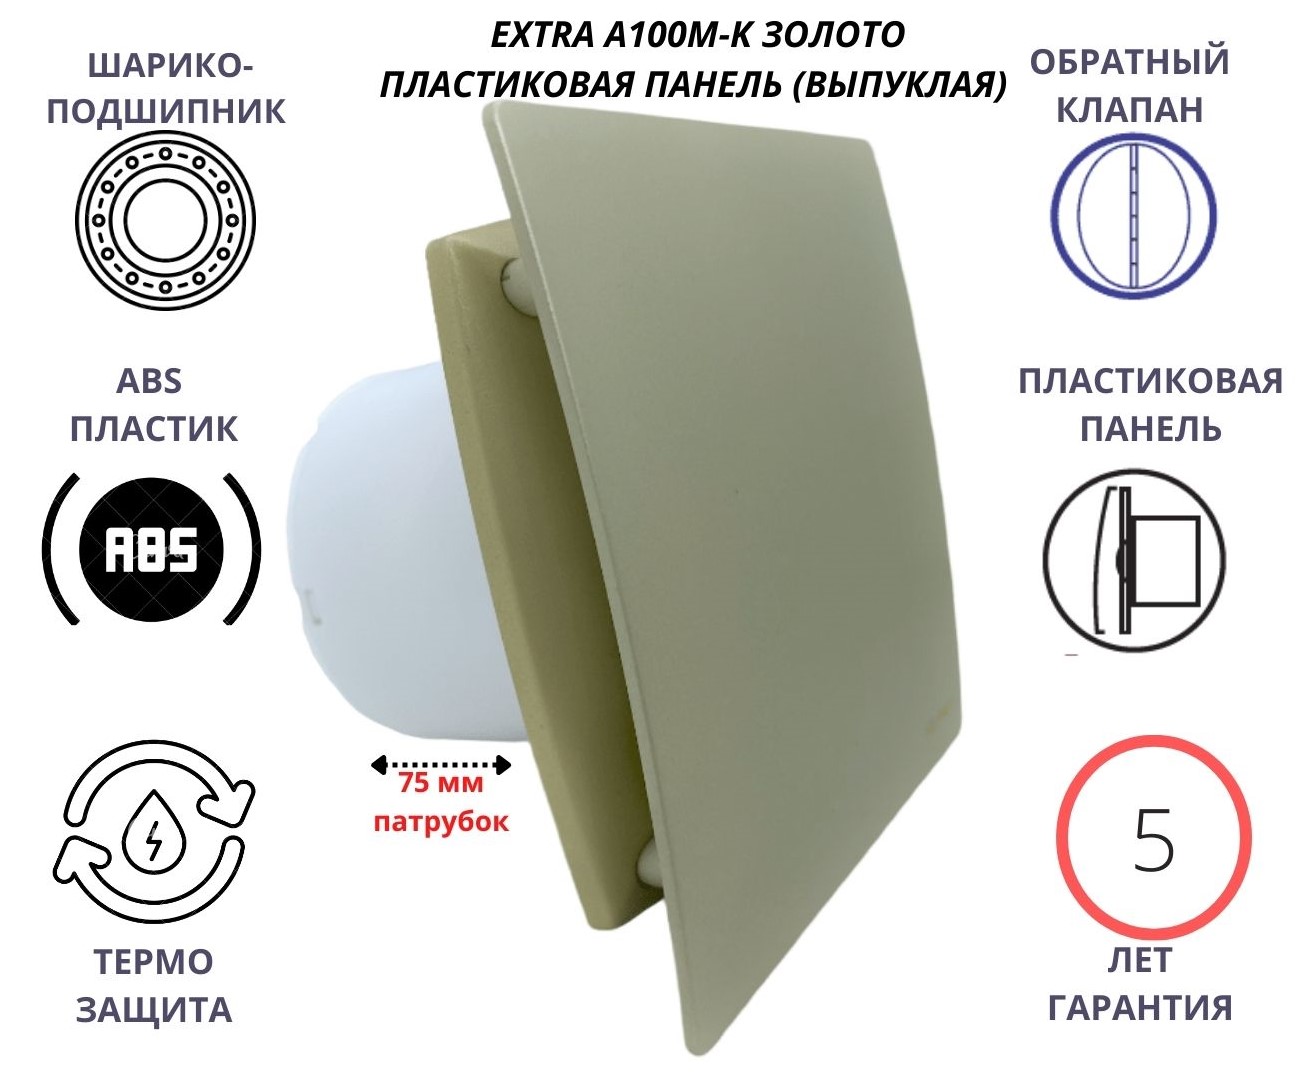 Вентилятор D100мм с пластиковой золотой панелью EXTRA A100М-K, Сербия вентилятор с таймером и плоской пластиковой панелью extra100m t pl сербия камень беж